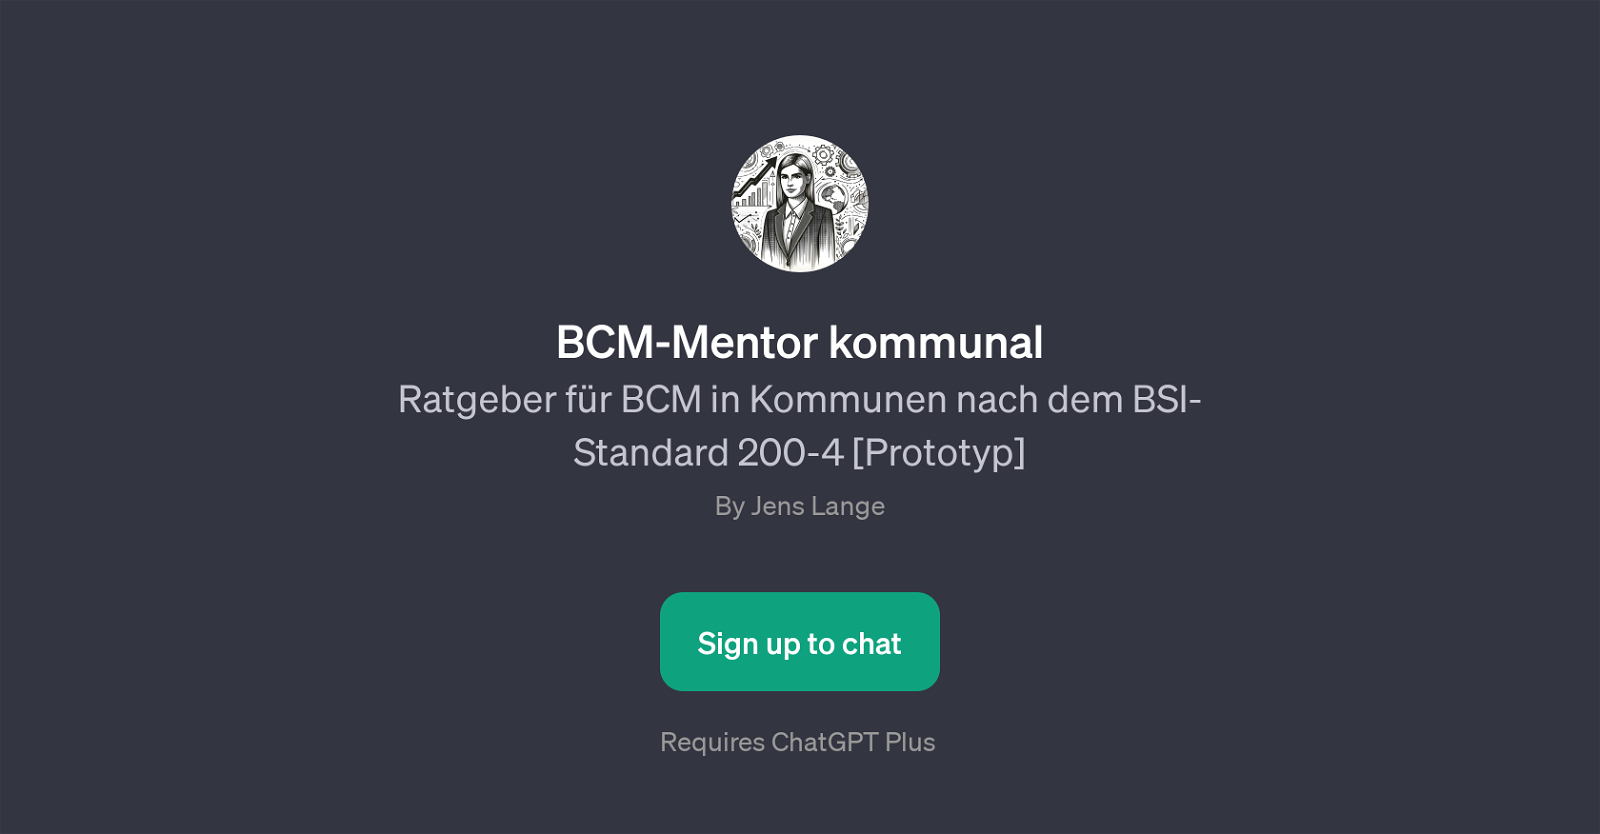 BCM-Mentor kommunal website